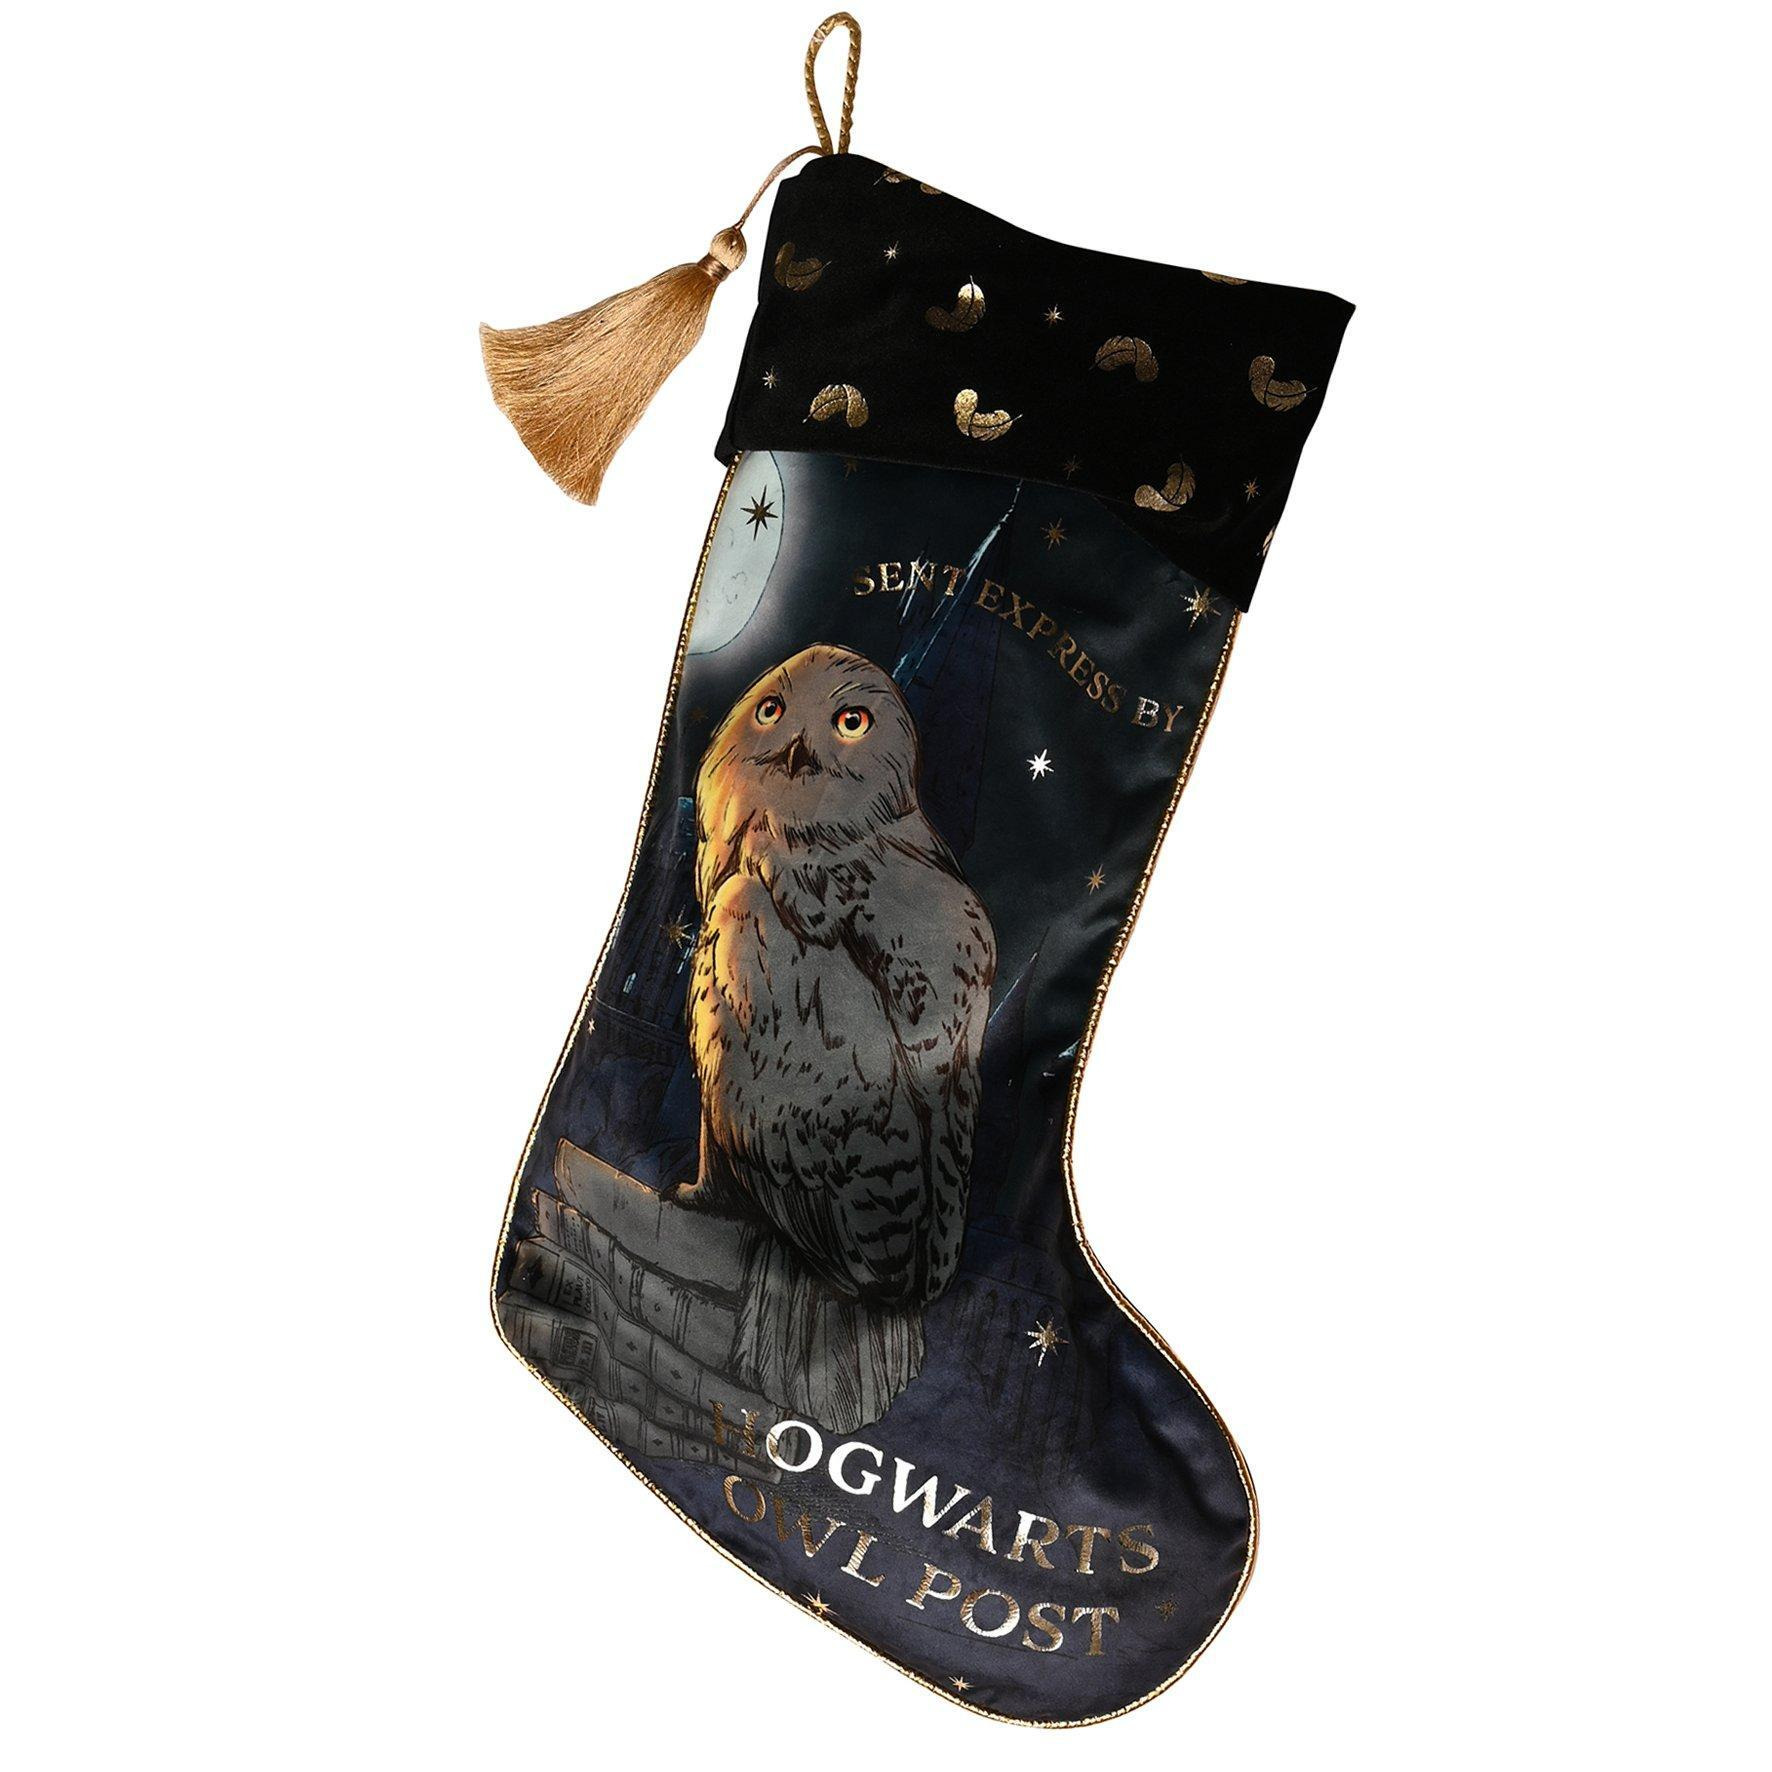 Harry Potter Alumni Stocking - Hogwarts Owl Post - image 1